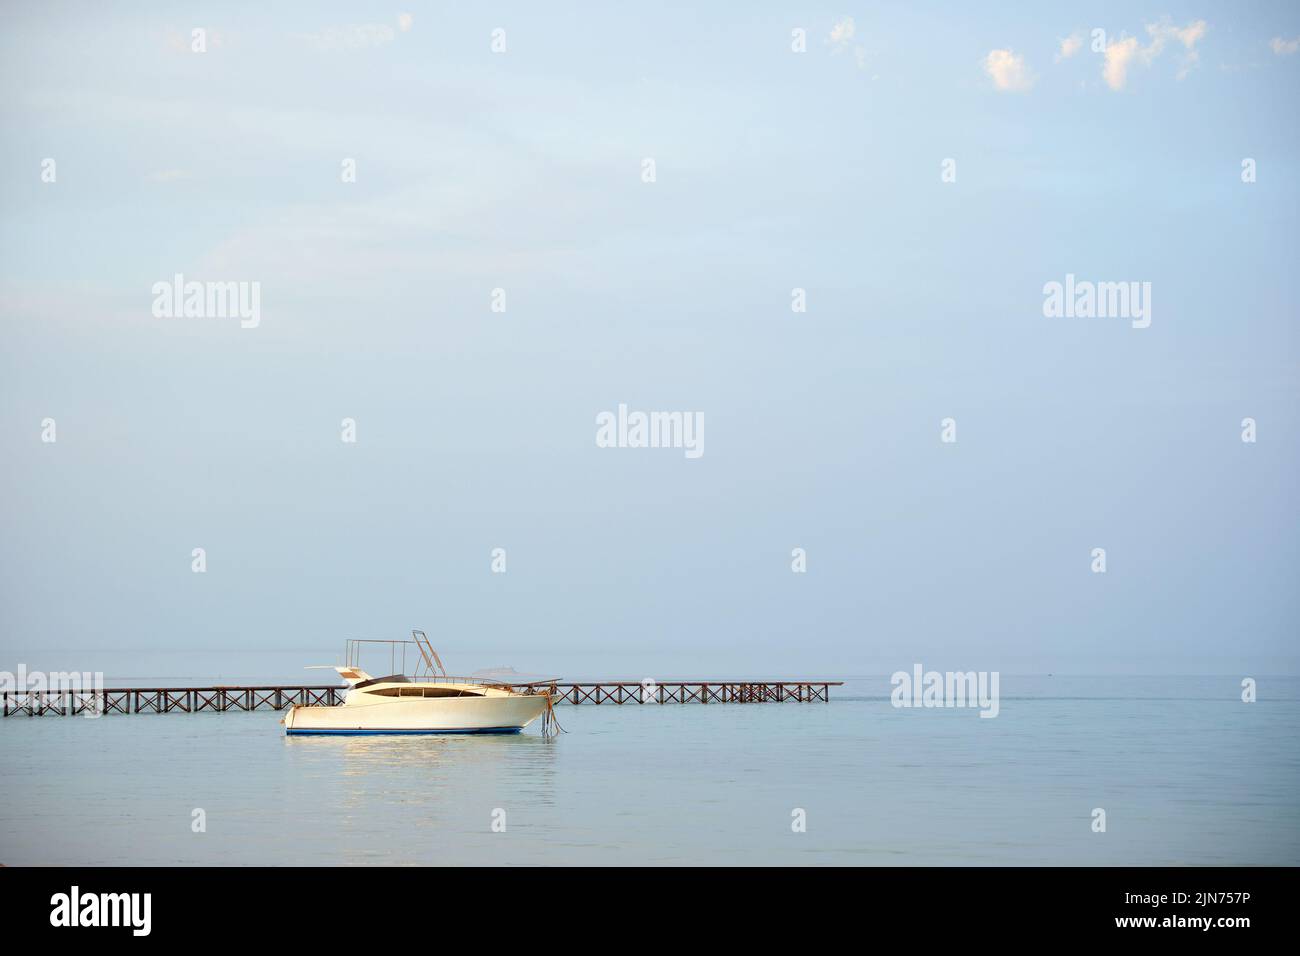 Le bateau à moteur blanc flotte dans l'eau de l'océan sur le long pont de la jetée sous le ciel bleu clair, vue depuis la plage de sable. Concept de voyage d'été Banque D'Images